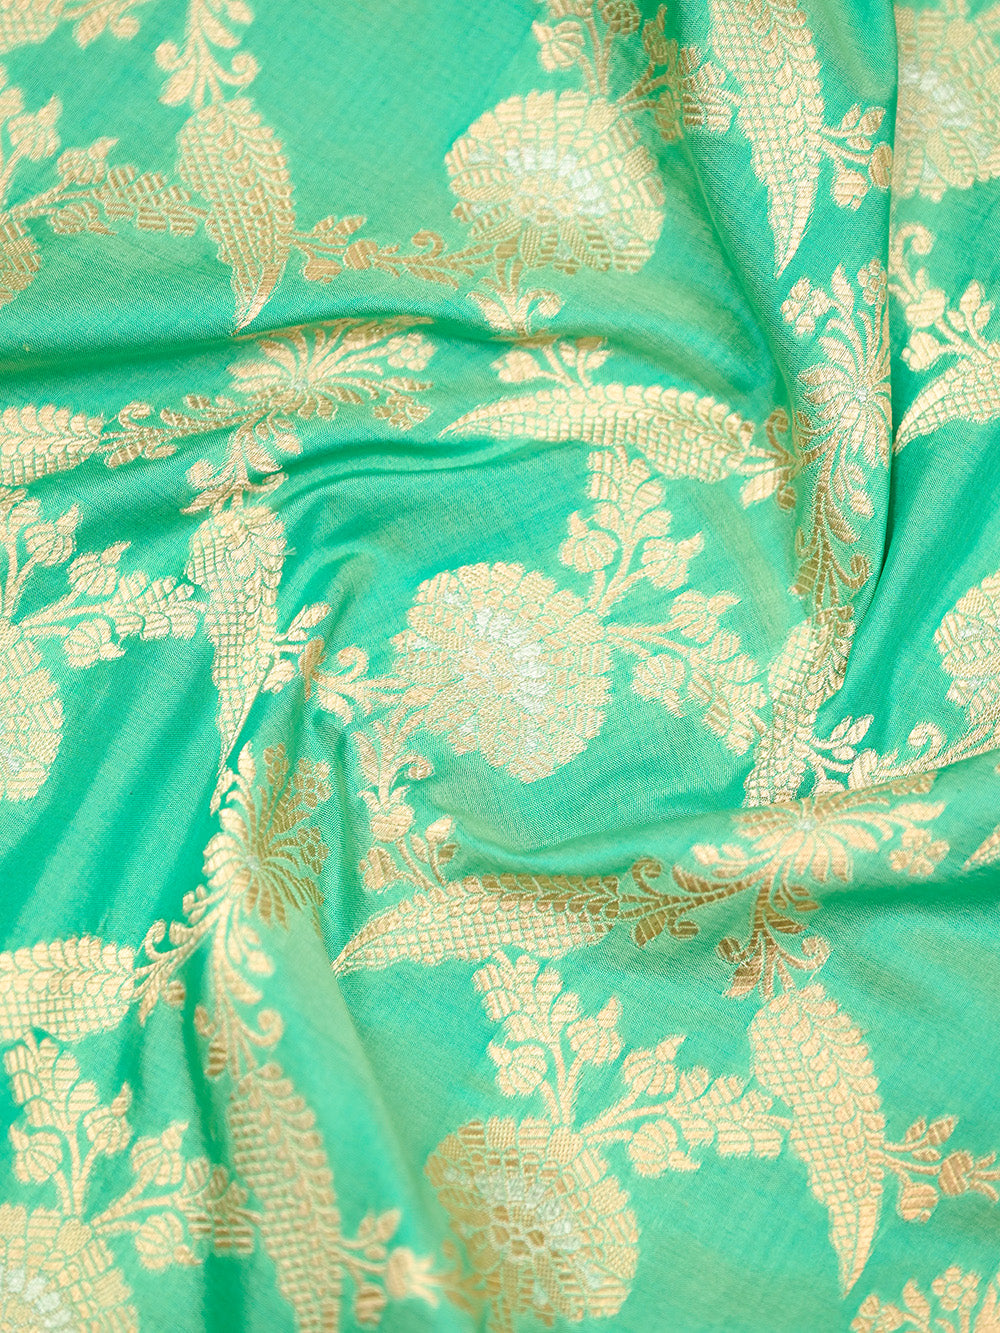 Sea Green Uppada Jaal Katan Silk Handloom Banarasi Saree